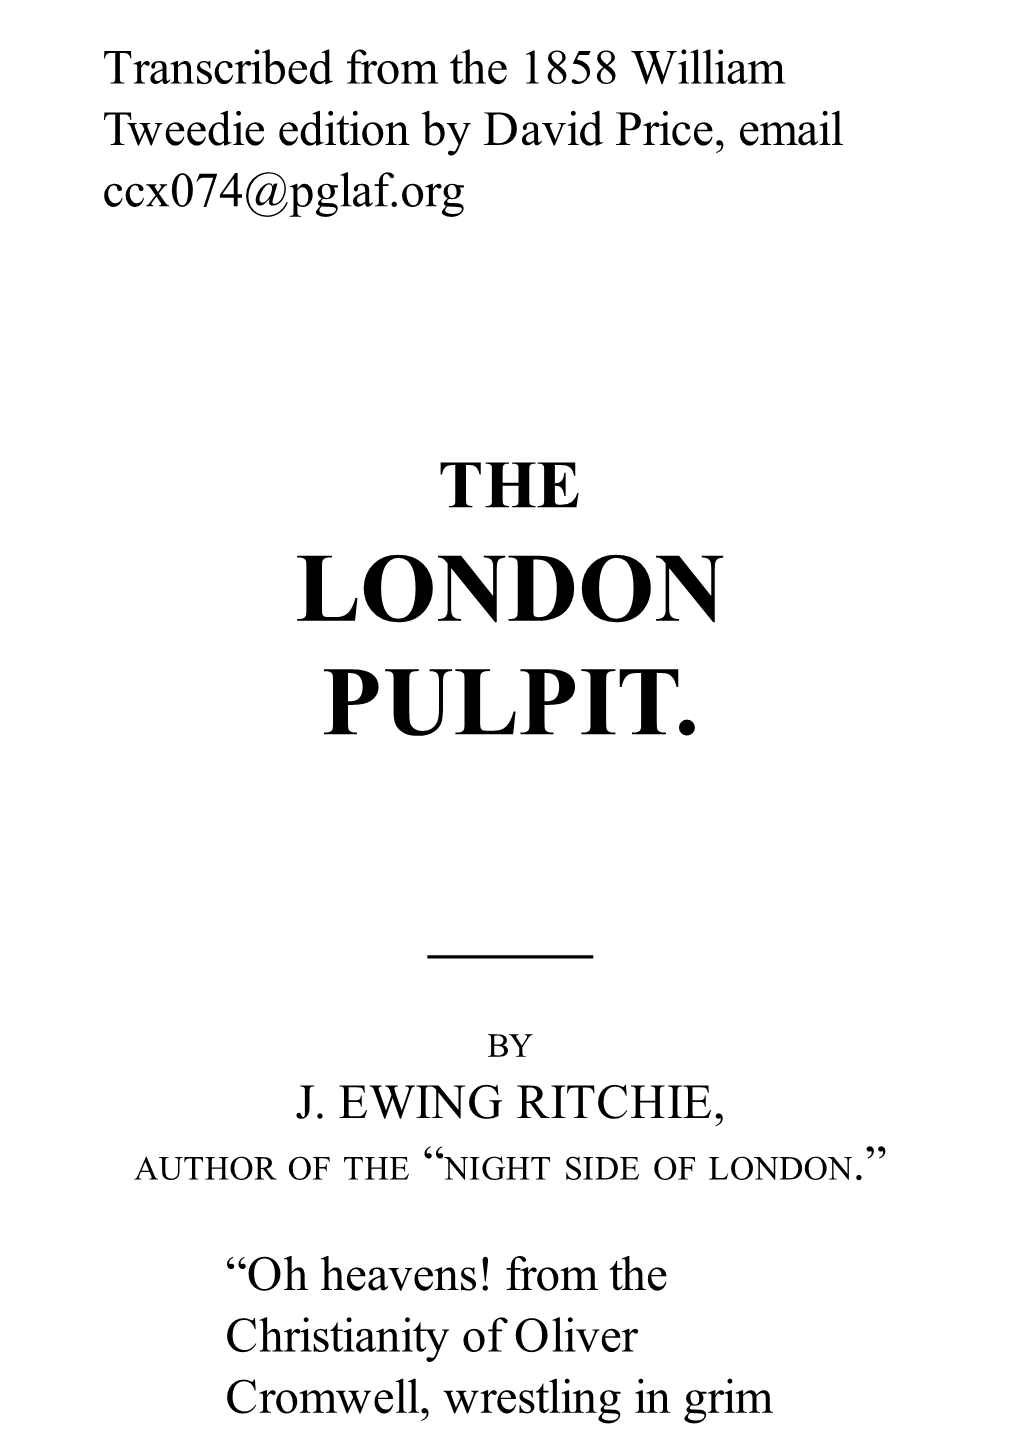 London Pulpit